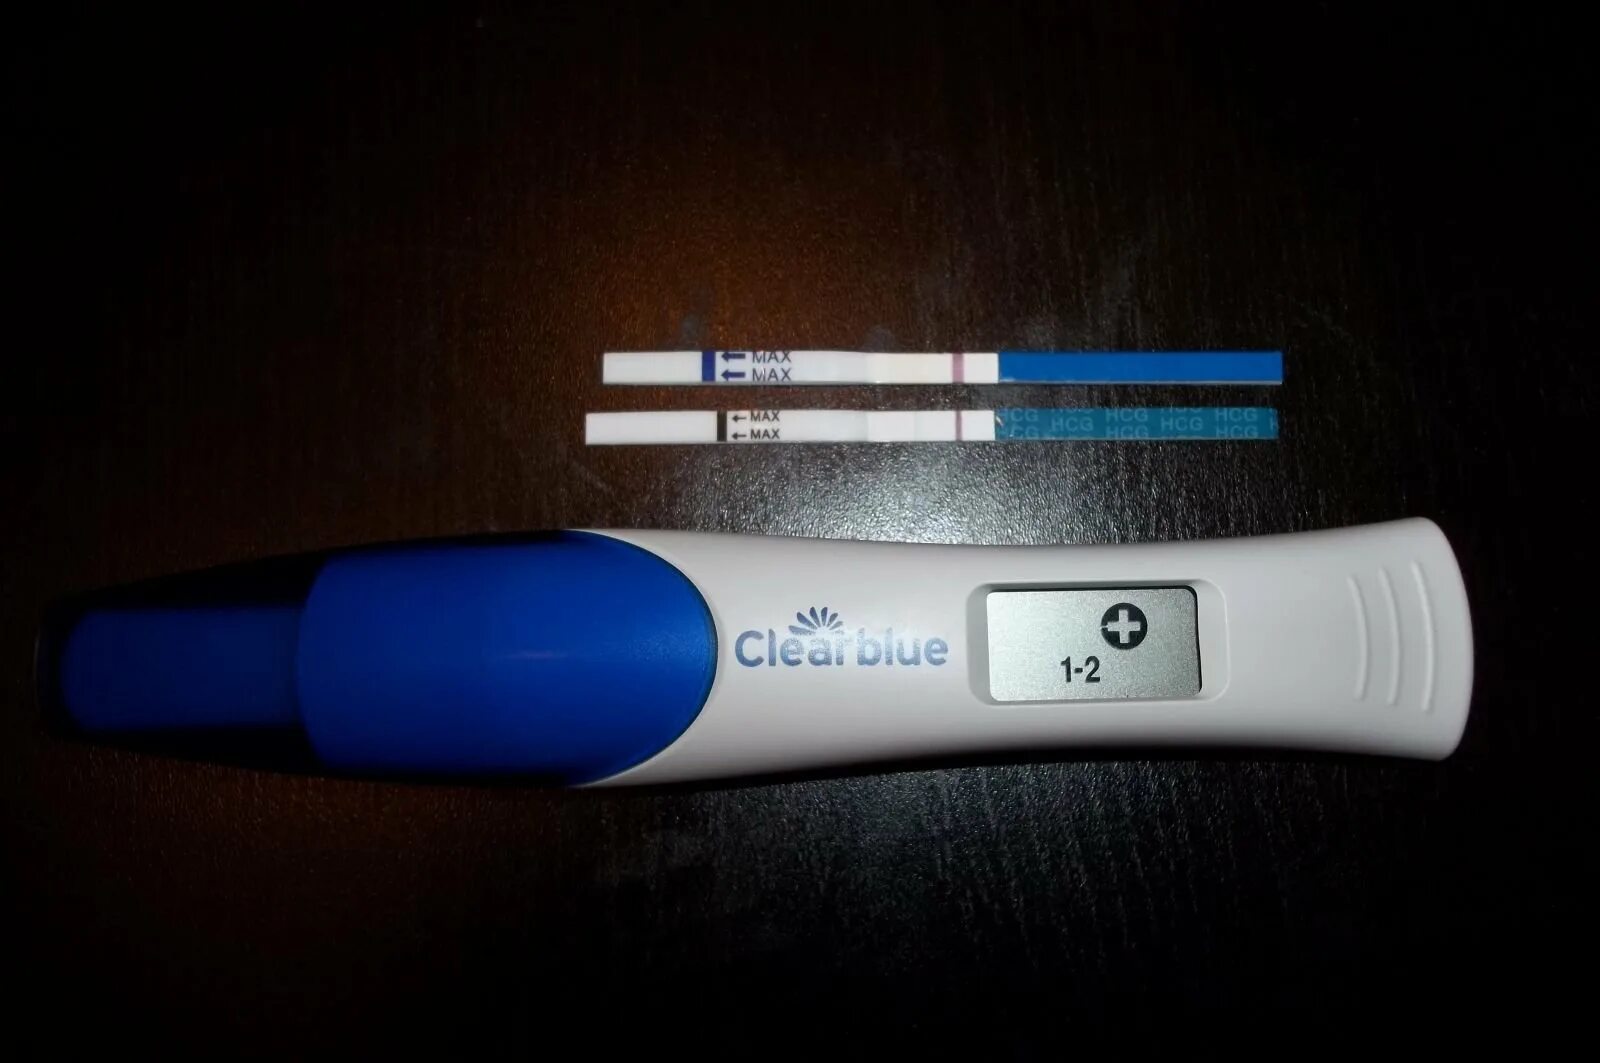 Покажет ли тест результат до задержки. Тест на беременность на 2 день задержки показывает беременность. Тест на беременность 1 и на 2 день задержки. Электронный тест на беременность на ранних сроках. Тест на беременность цифровой Clearblue до задержки результат.